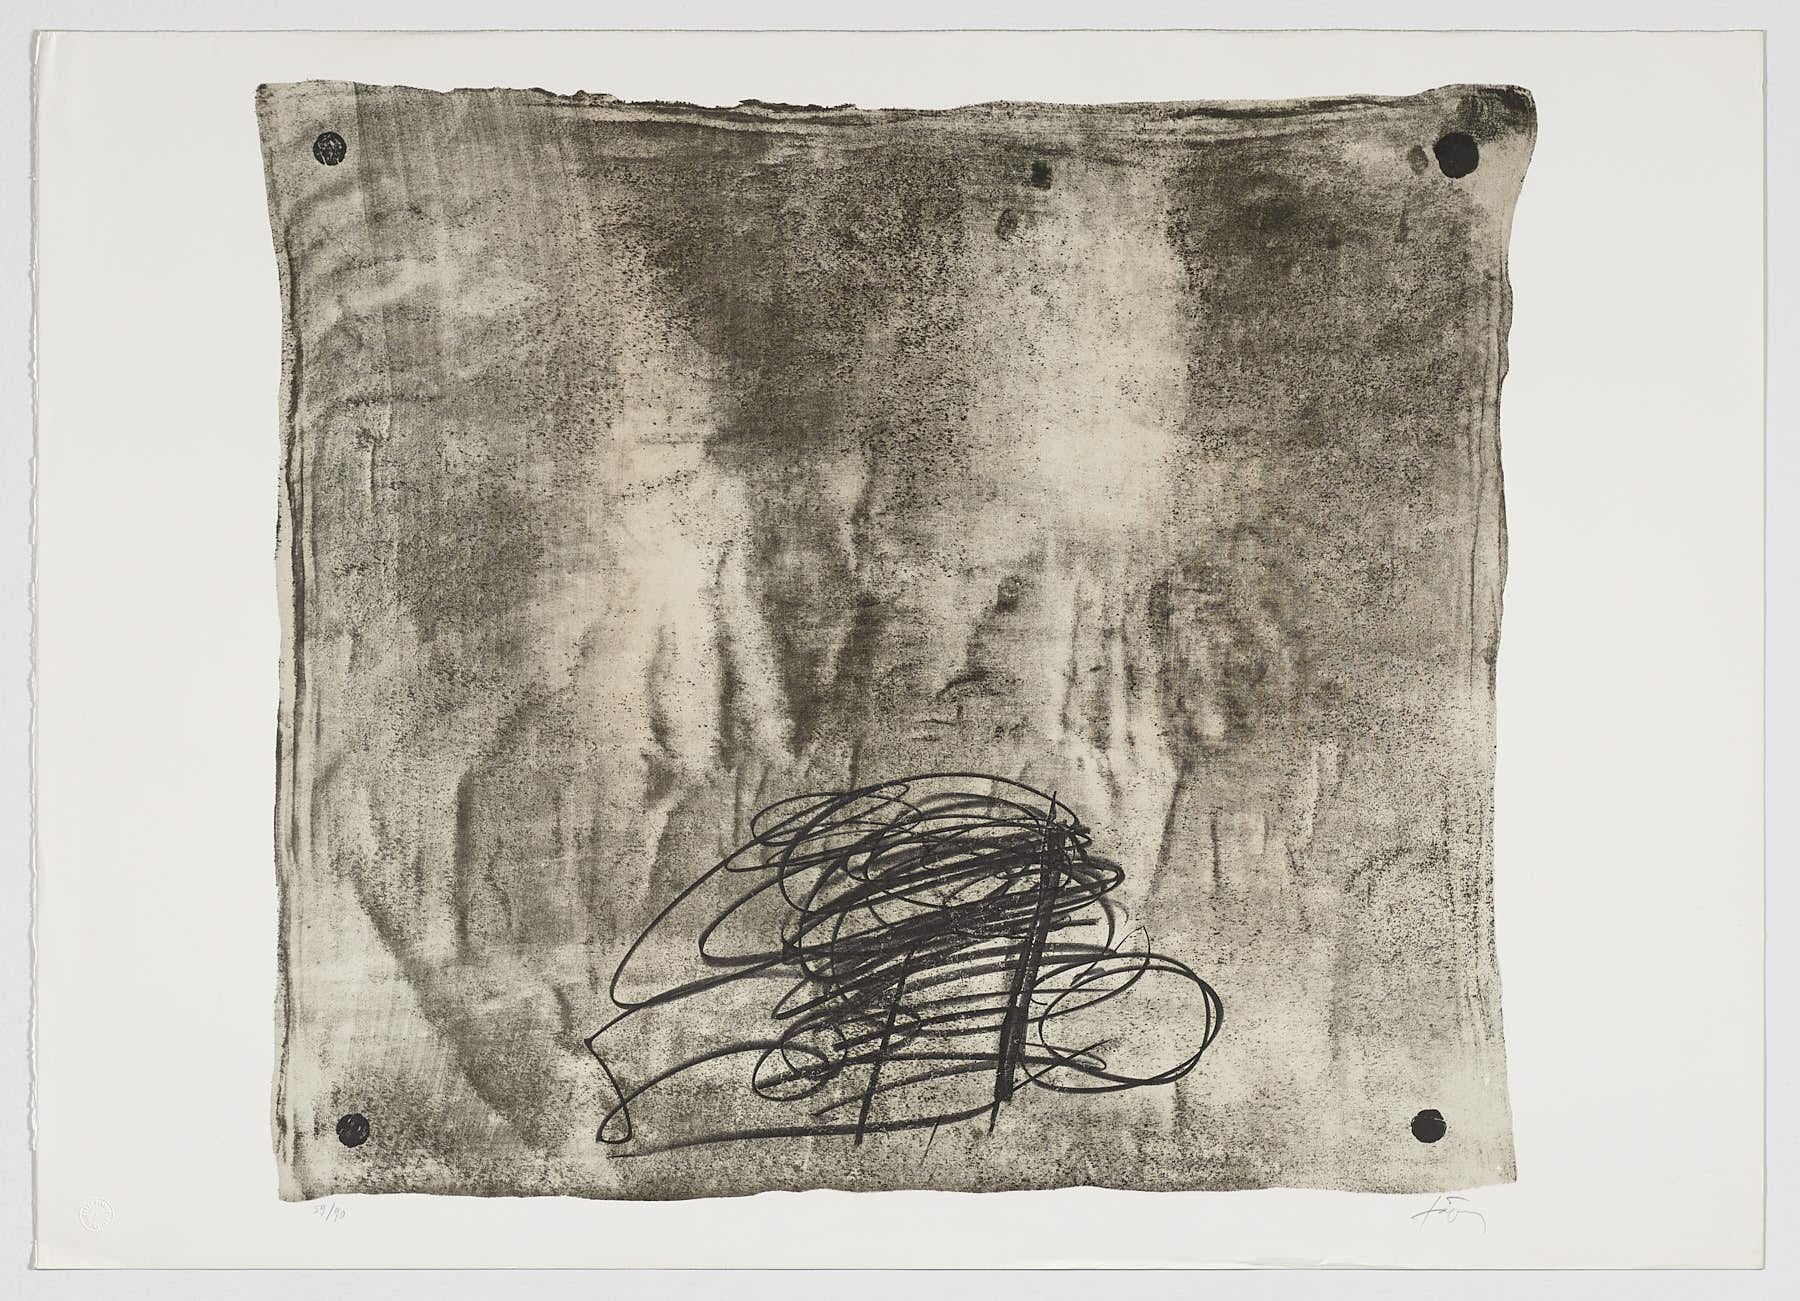 Abstract Print Antoni Tàpies - Lithographie d'artiste espagnol signée, édition limitée, numérotée n29